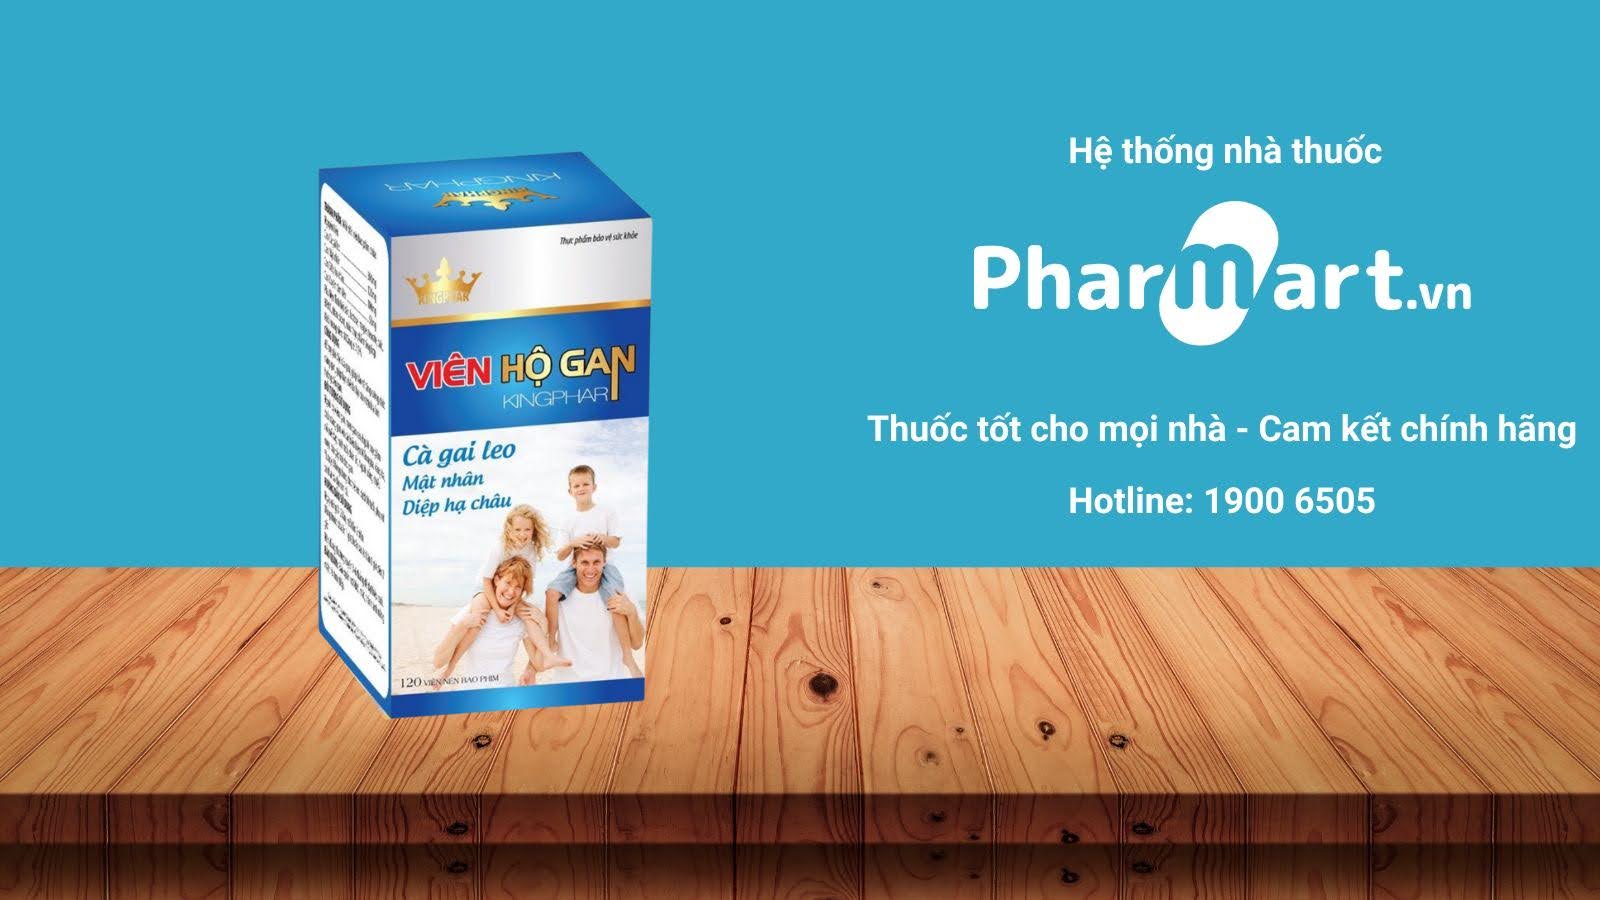 Mua ngay Viên hộ gan Kingphar chính hãng tại Pharmart.vn.